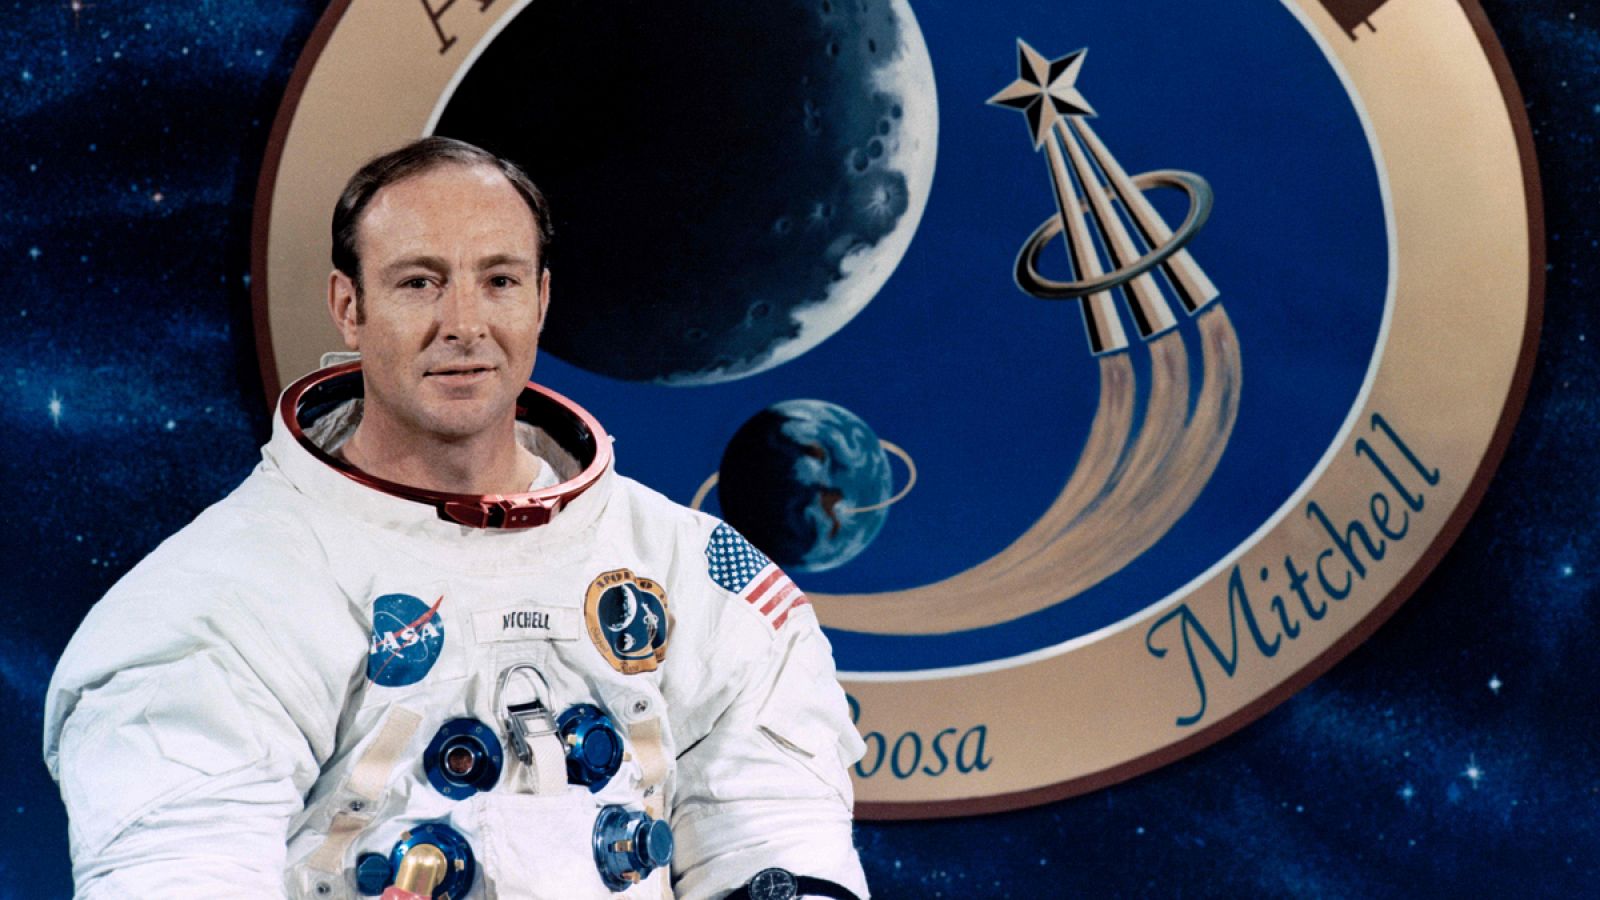 El miembro de la misión Apolo 14 y sexto hombre en pisar la luna, Edgar Mitchell